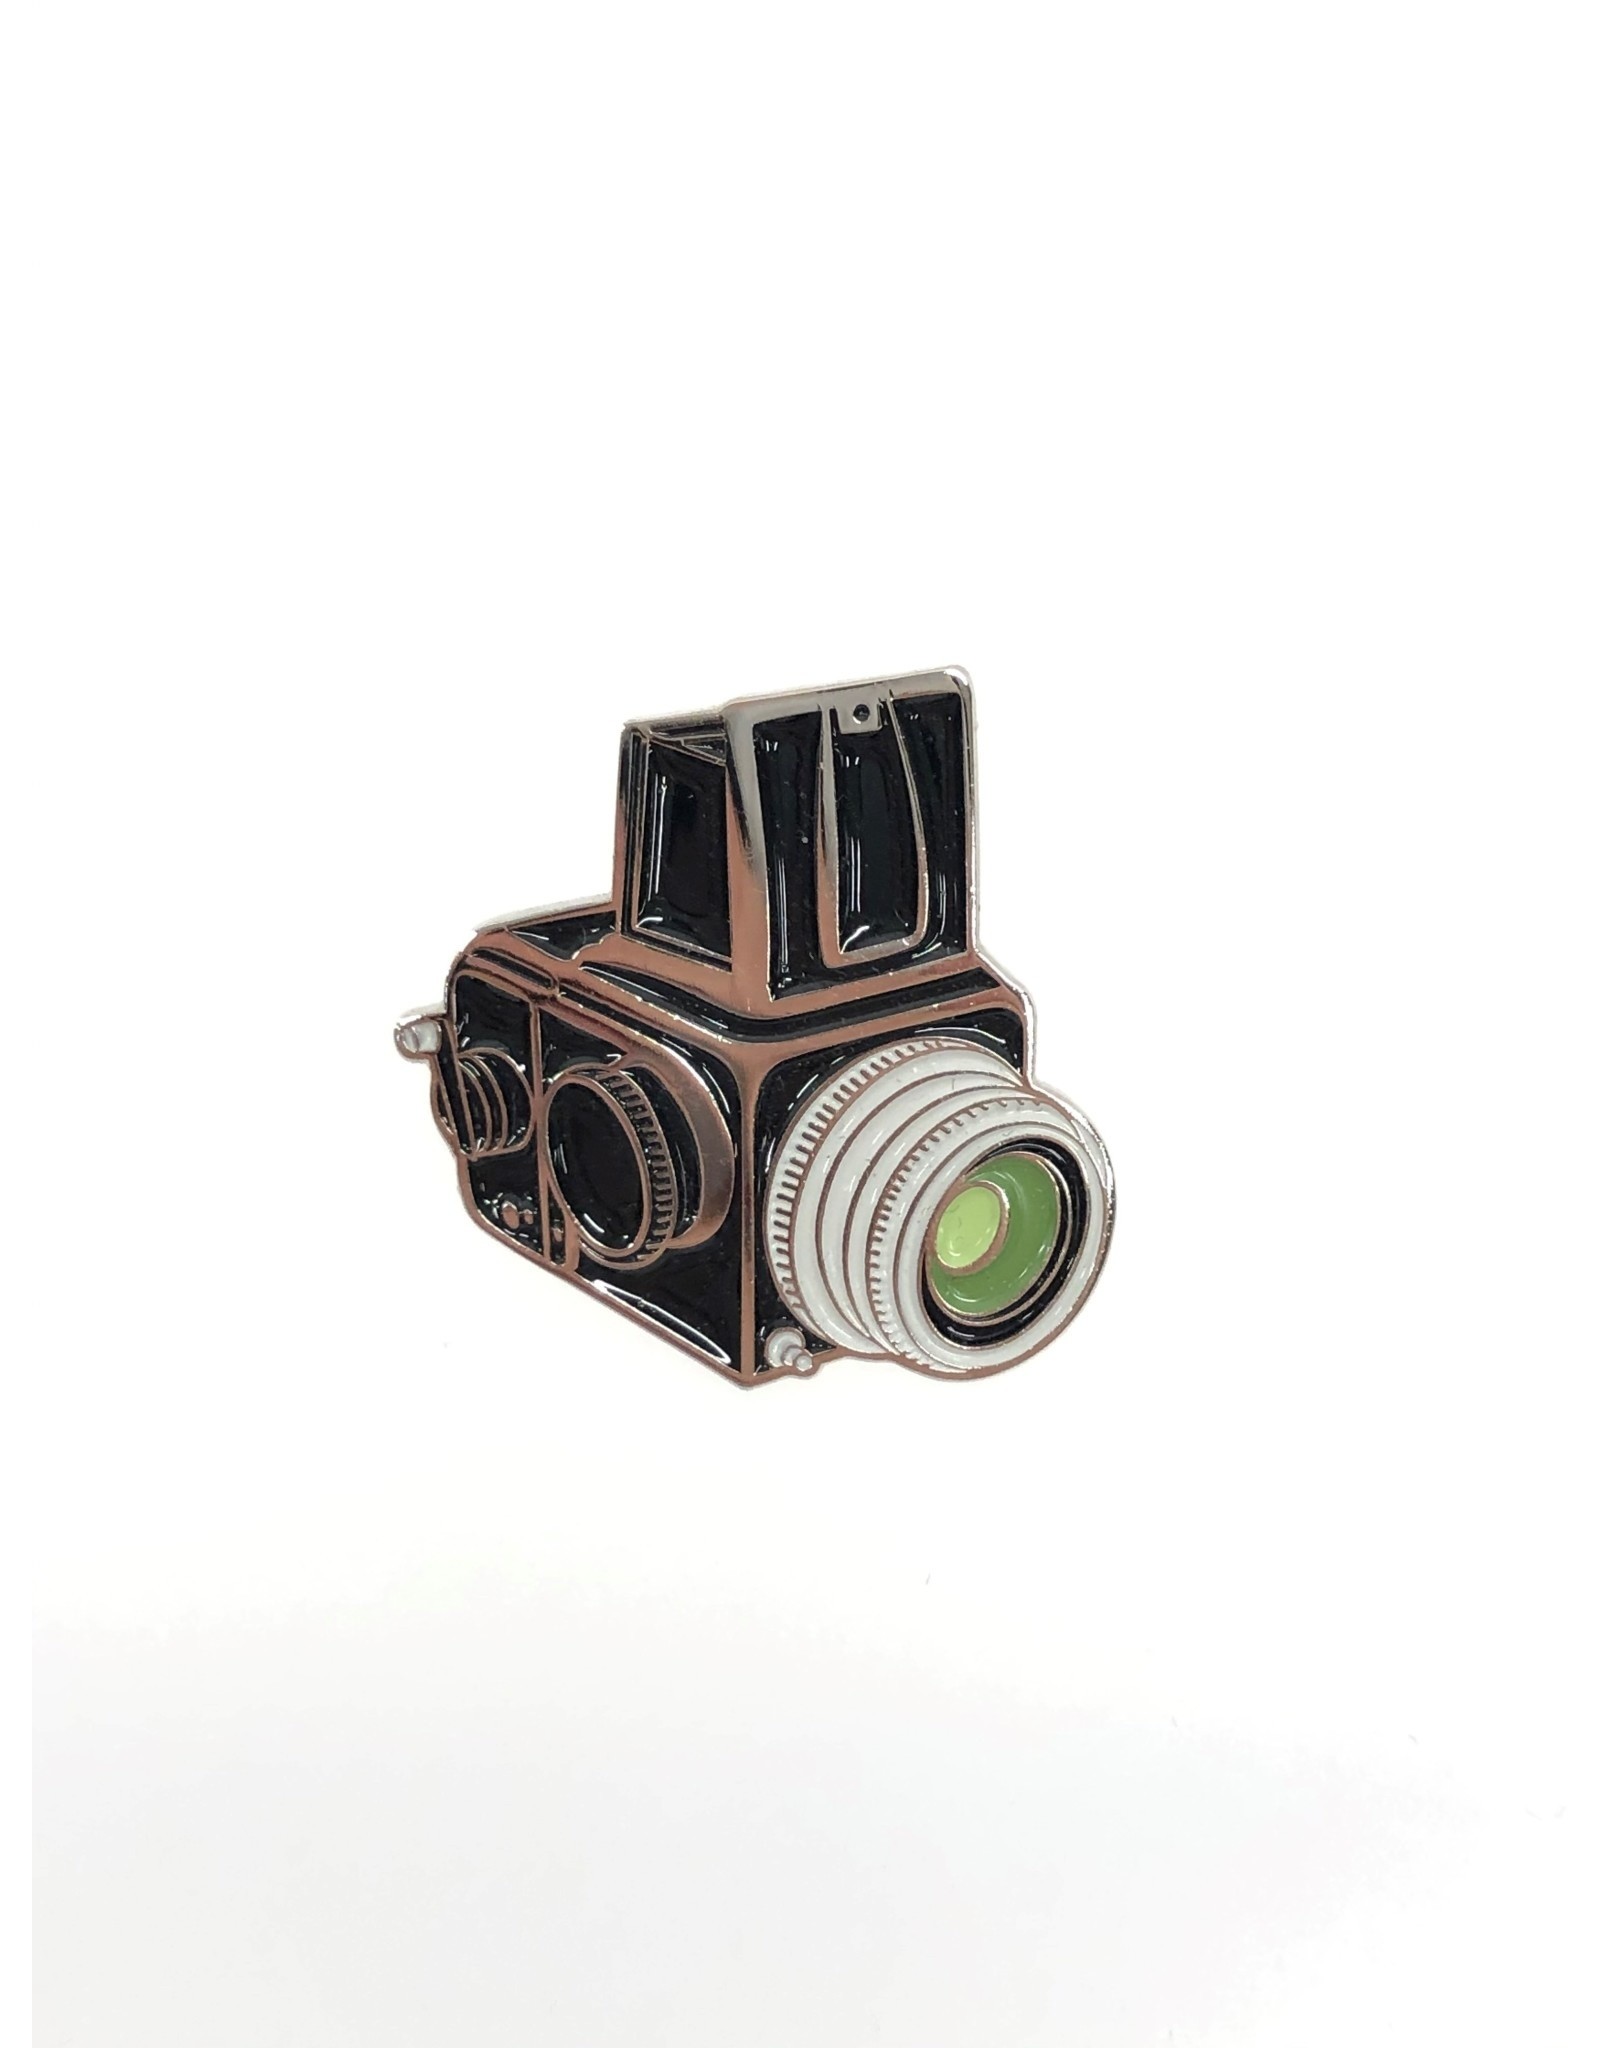 Medium Format Camera Lapel Pin